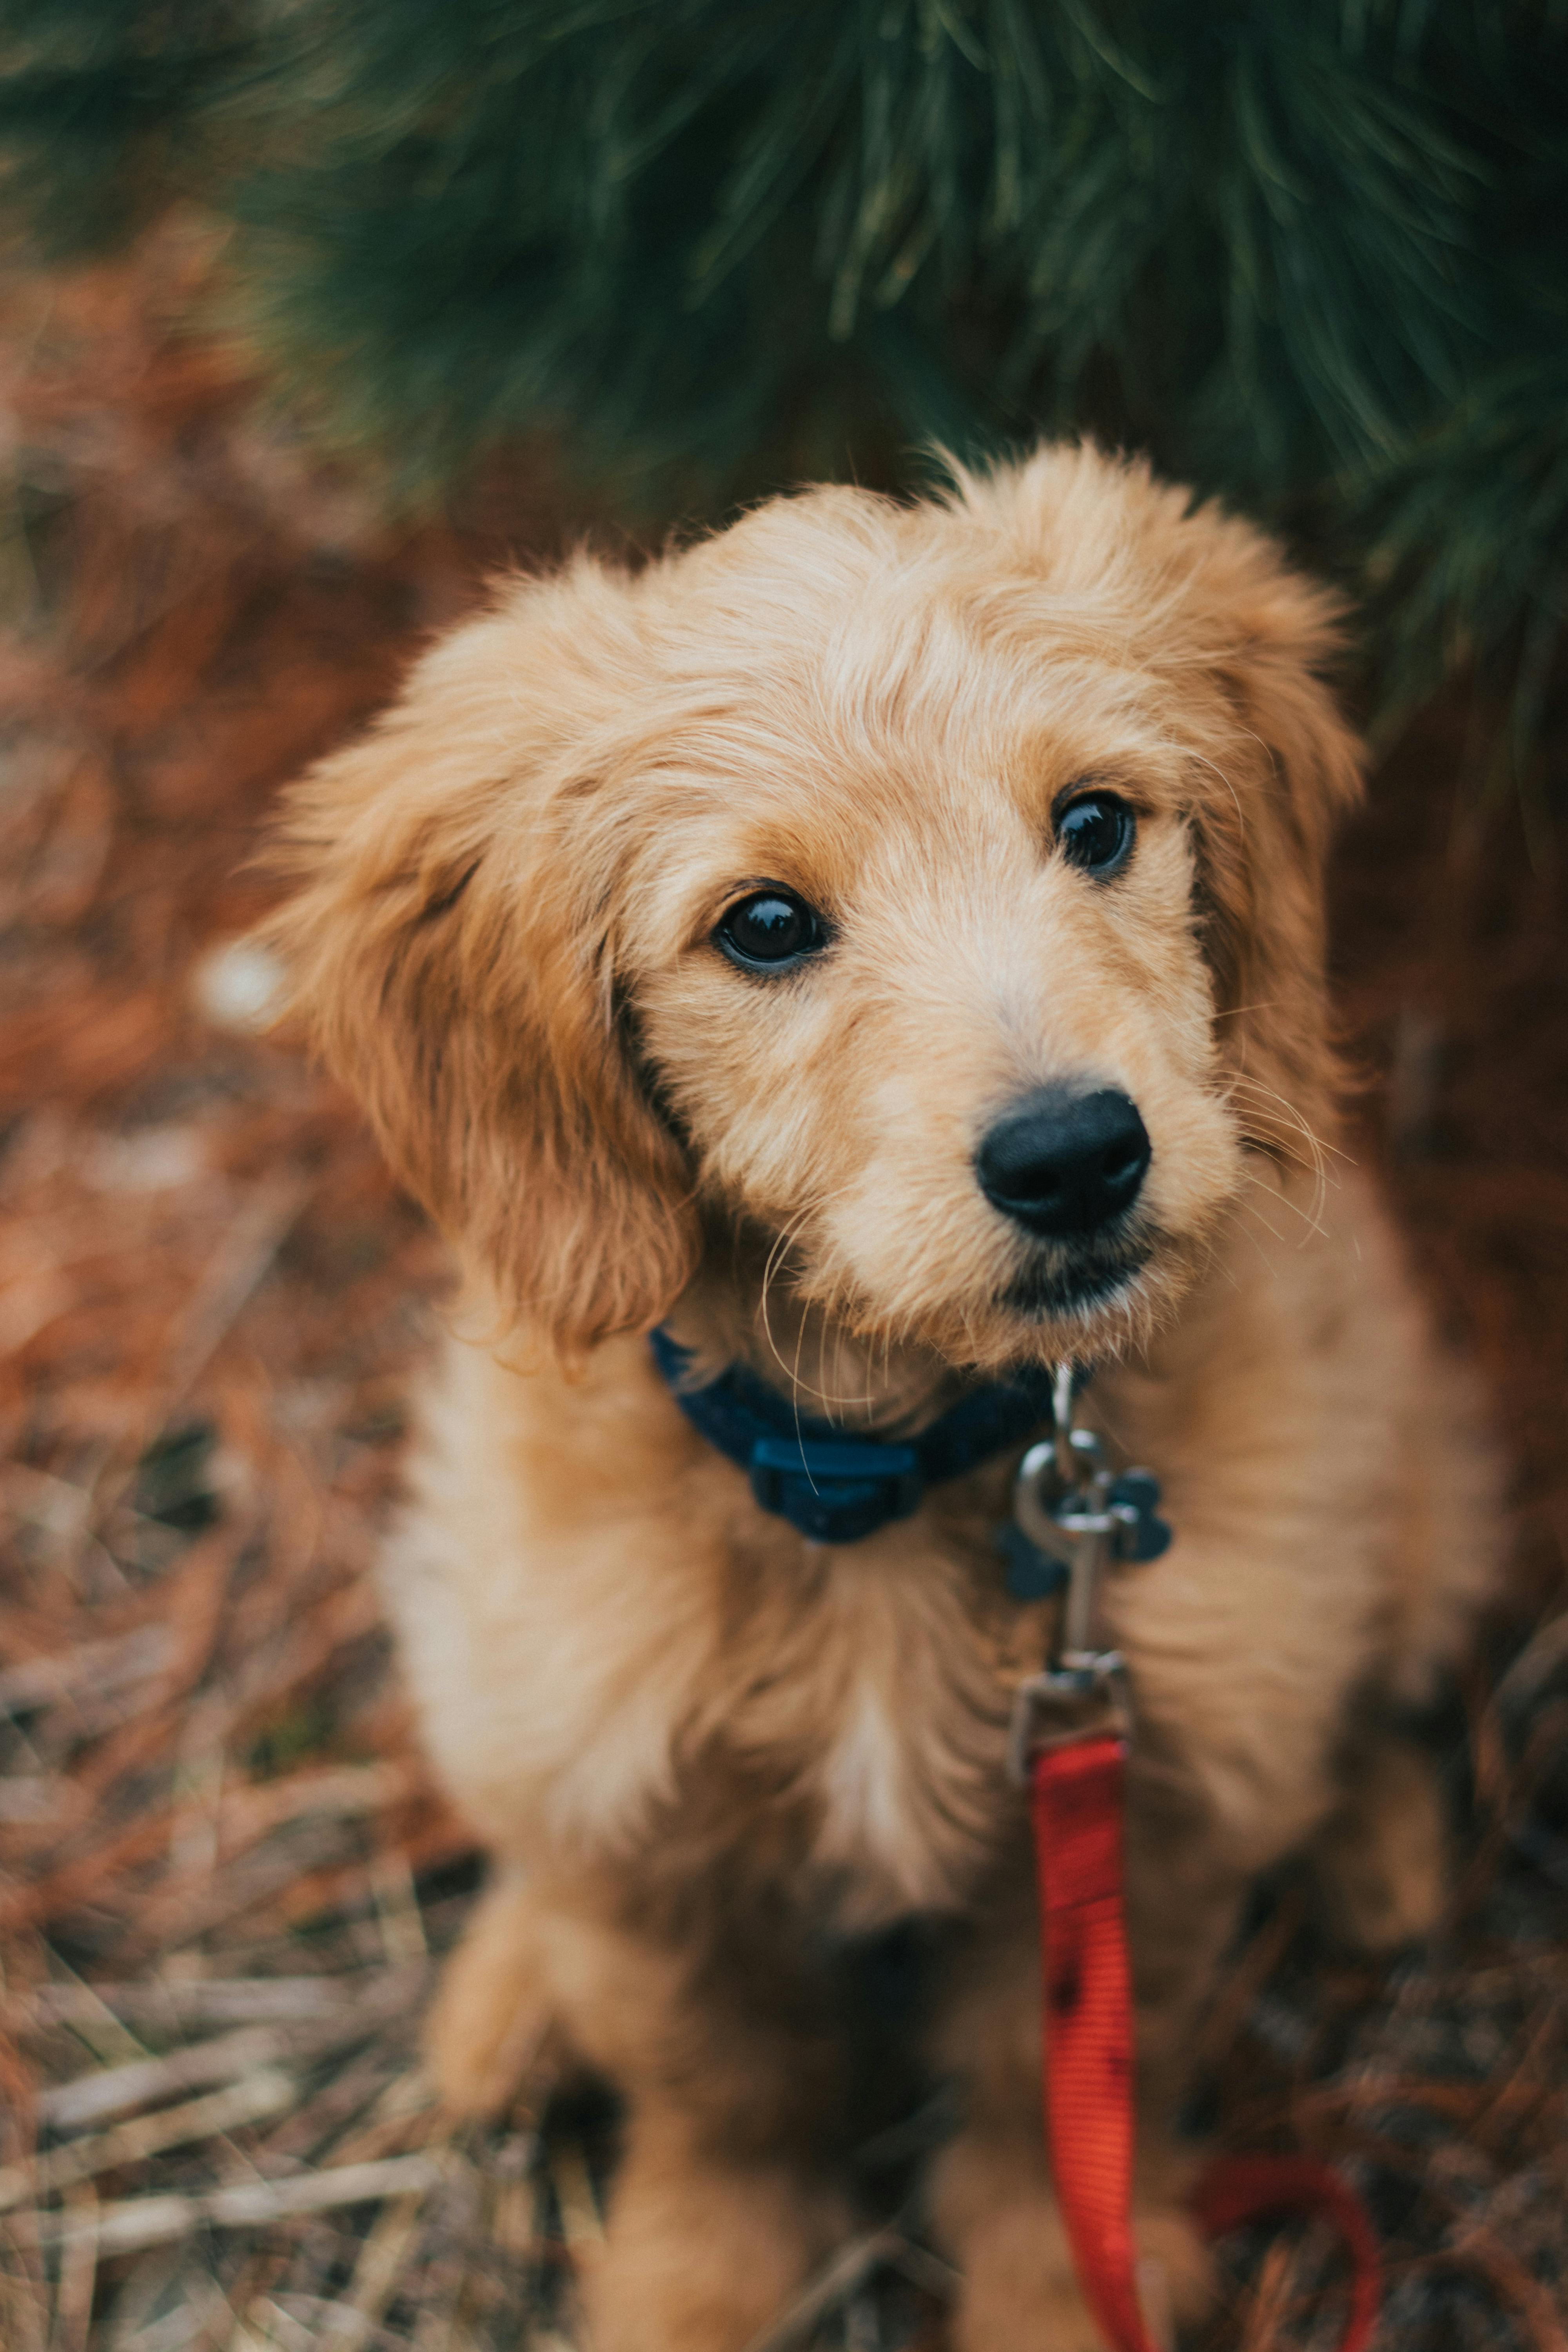 Bạn đang tìm kiếm những bức ảnh chó vàng dễ thương nhất để tải về miễn phí? Đừng bỏ qua ảnh này - đó là những bức ảnh chó vàng tuyệt nhất từ trước đến nay. Với rất nhiều ảnh đẹp và độc đáo, bạn không thể không yêu chúng.